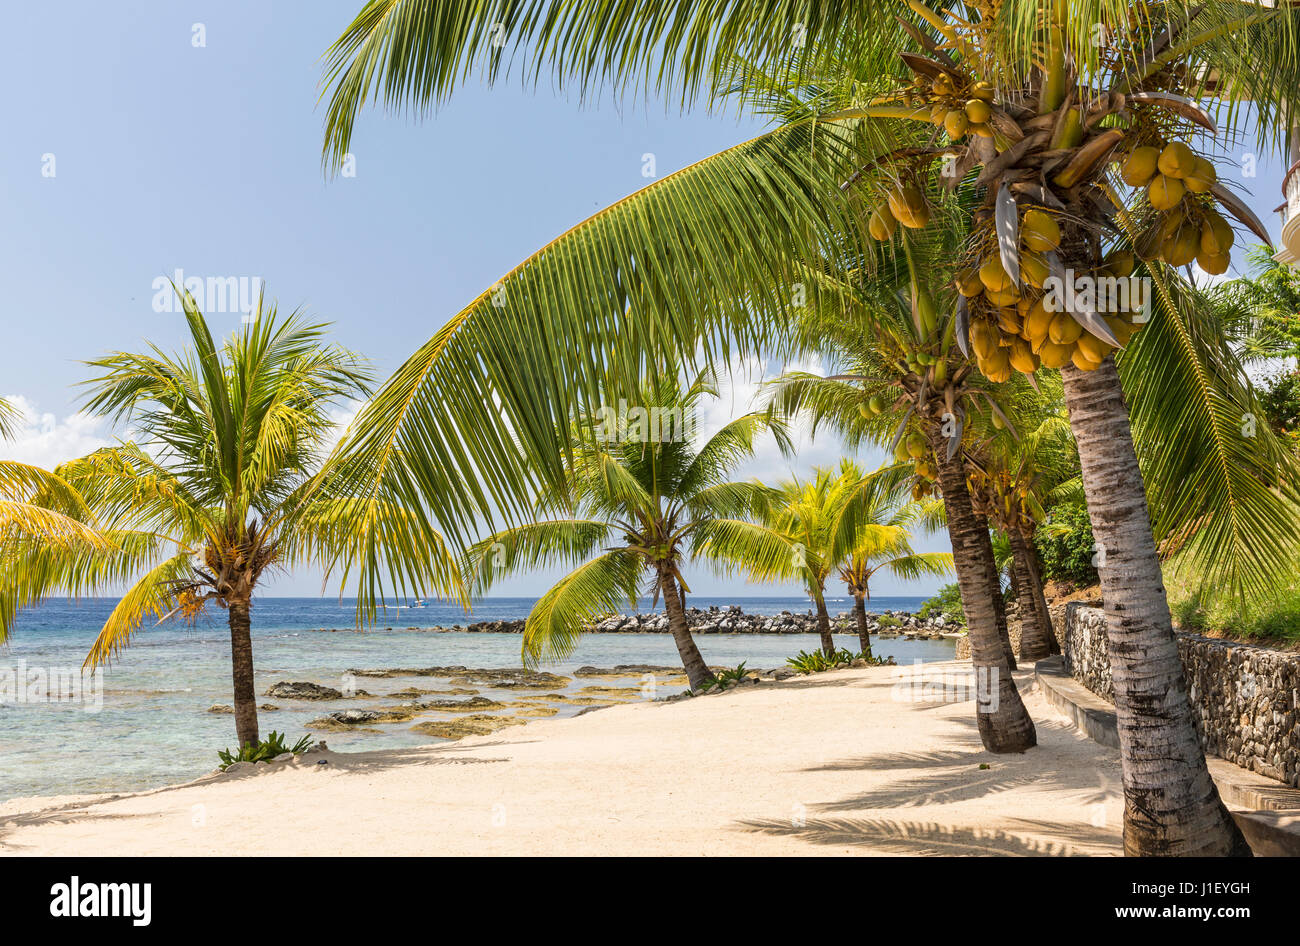 La línea de palmeras de coco de la hermosa playa de arena y arrecifes de coral cerca del faro en el Meridian Resort en Roatan, Honduras. Foto de stock